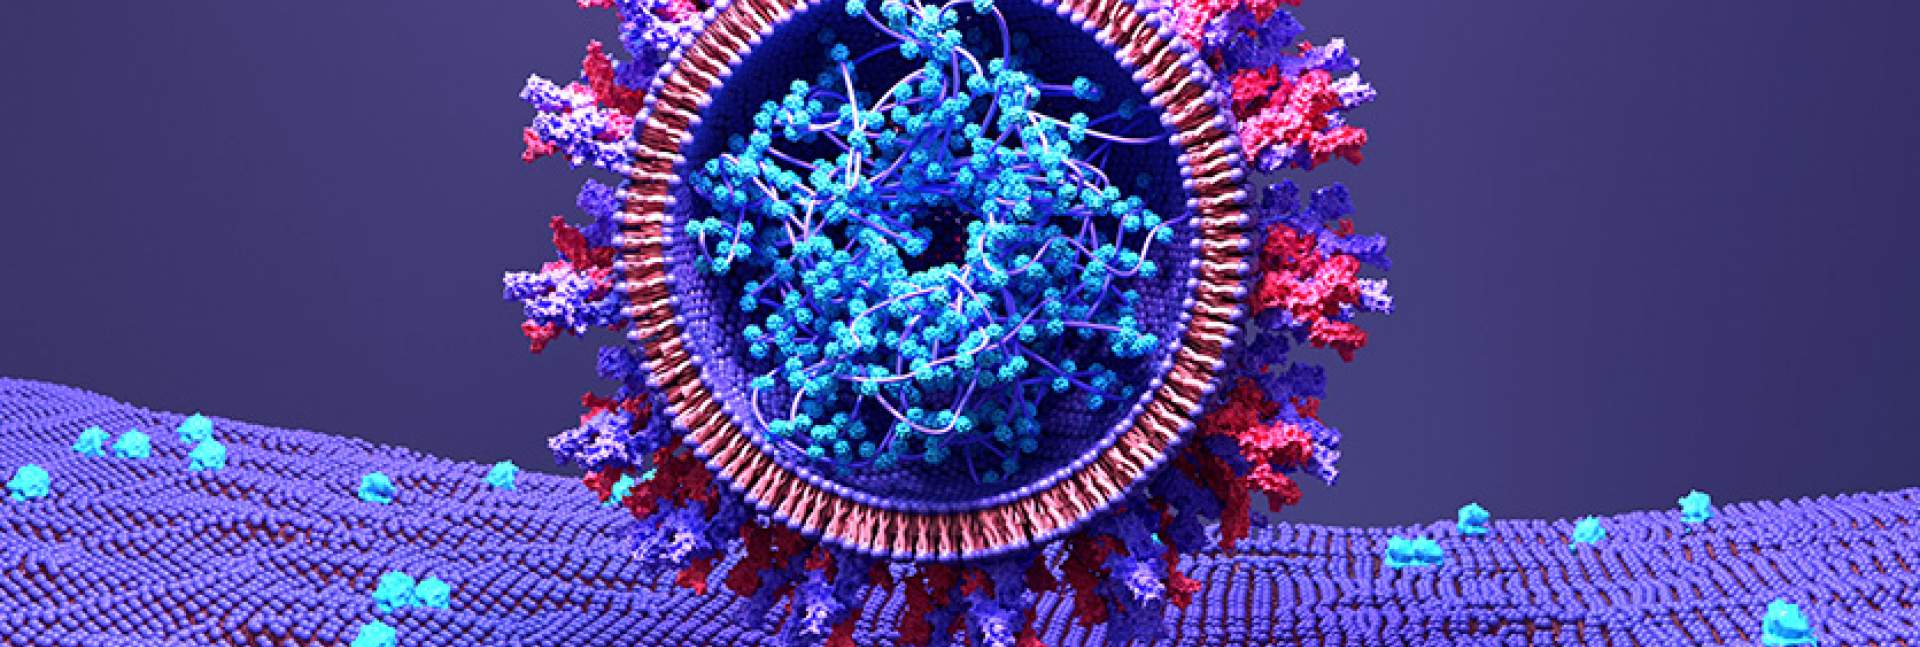 תמונת אילוסטרציה של נגיף הקורונה נקשר לקולטן ACE2 הנמצא על גבי קרום התא. מקור: שאטרסטוק